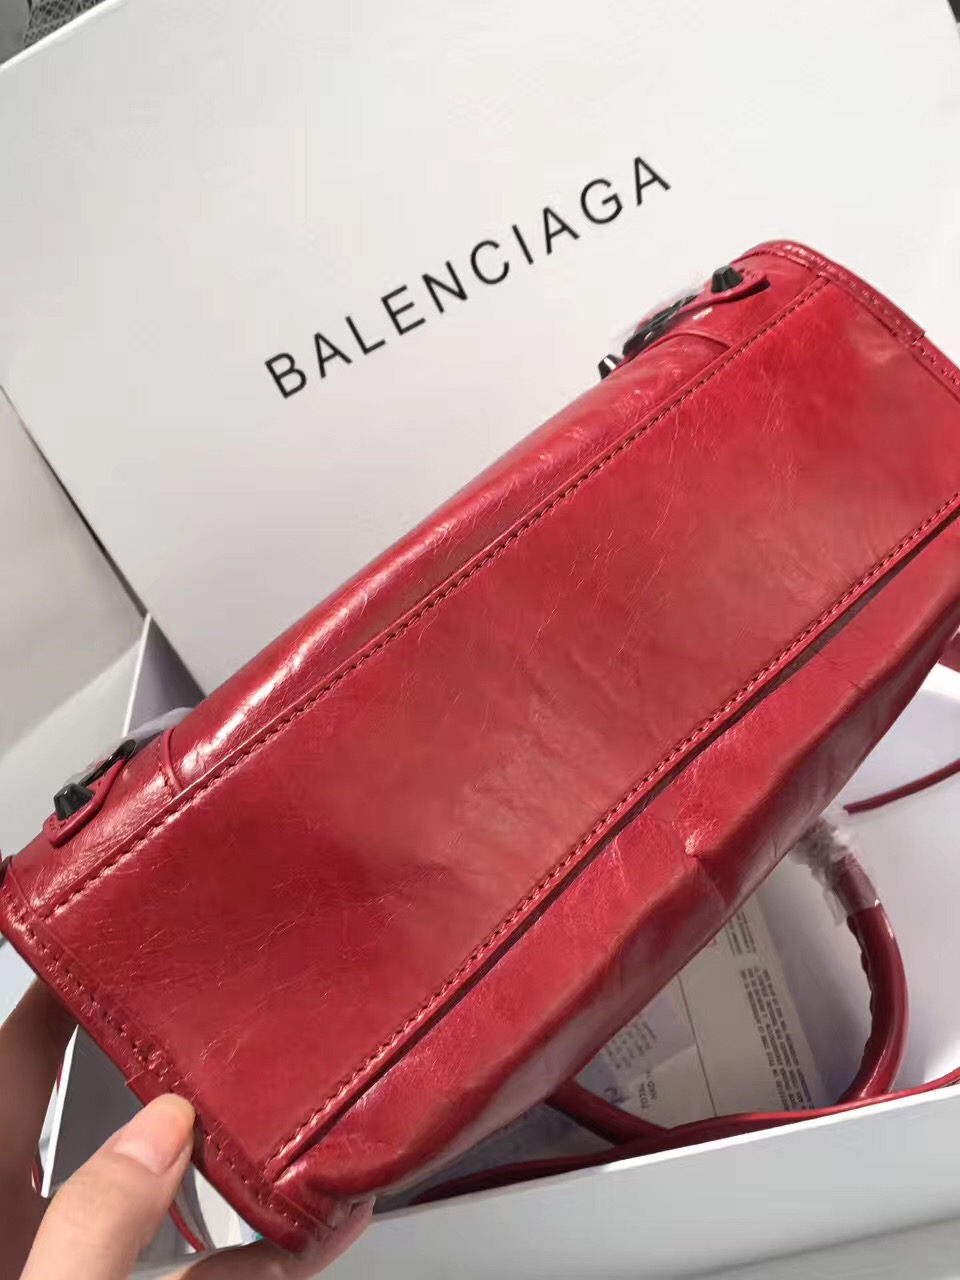 balenciaga city small red handbags